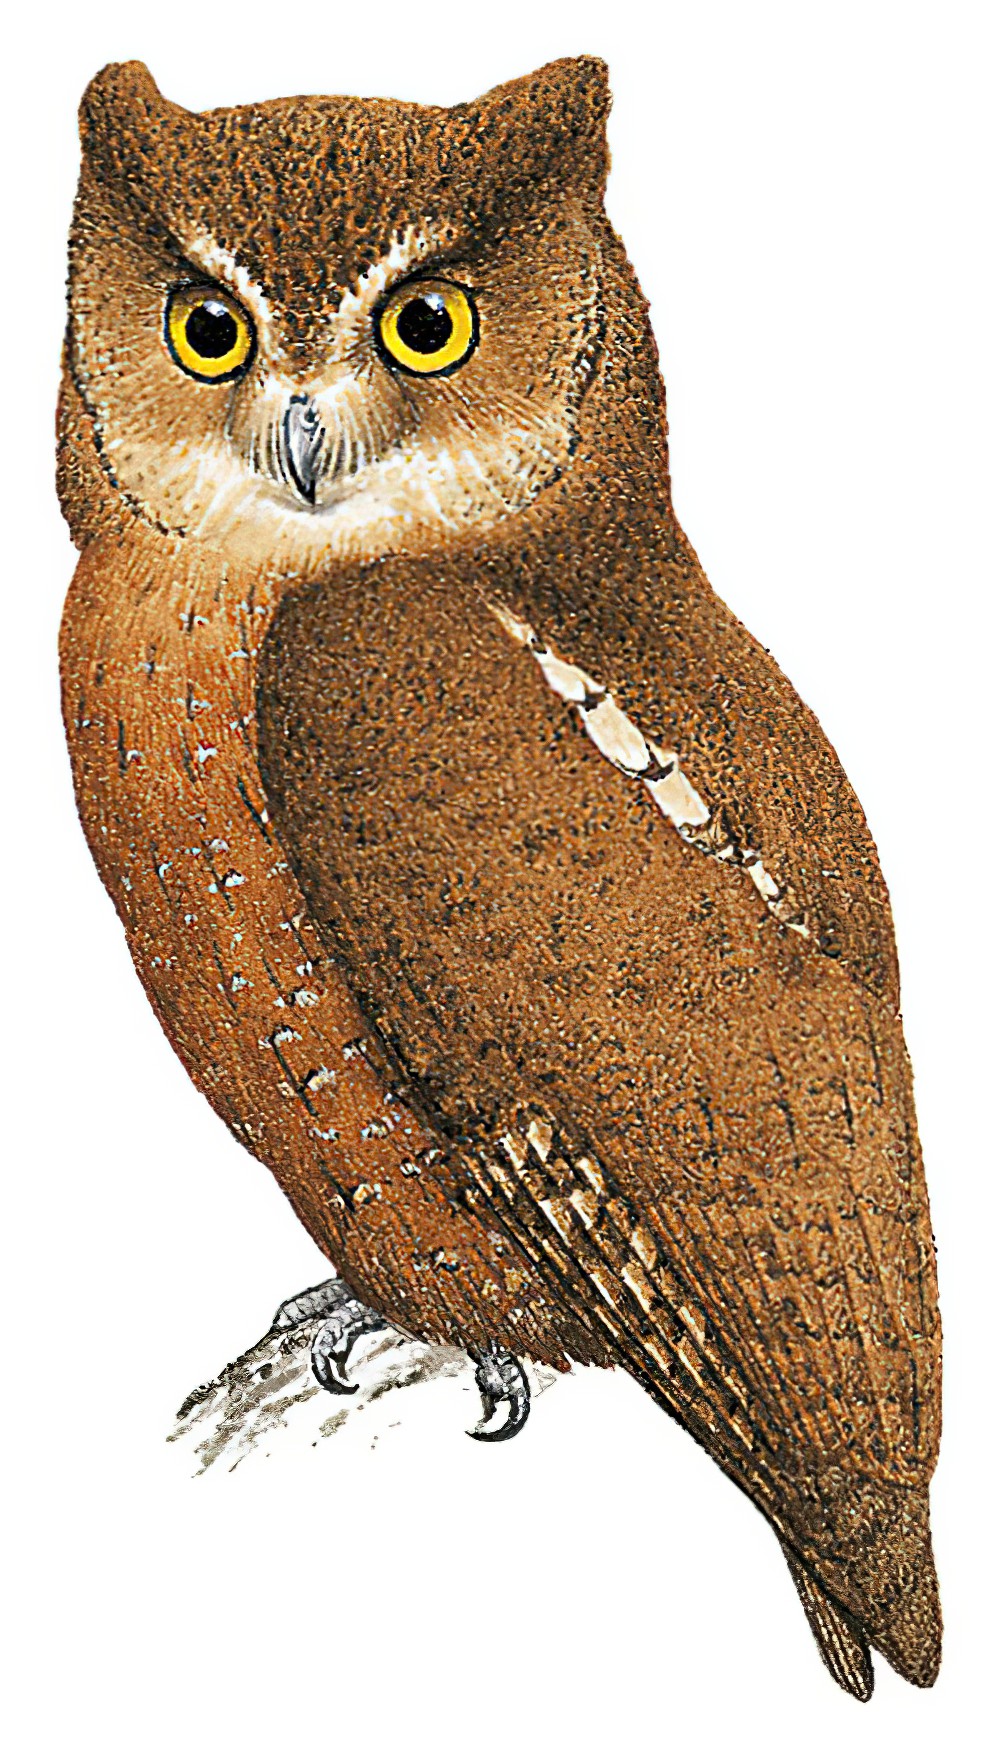 恩加诺角鸮 / Enggano Scops Owl / Otus enganensis